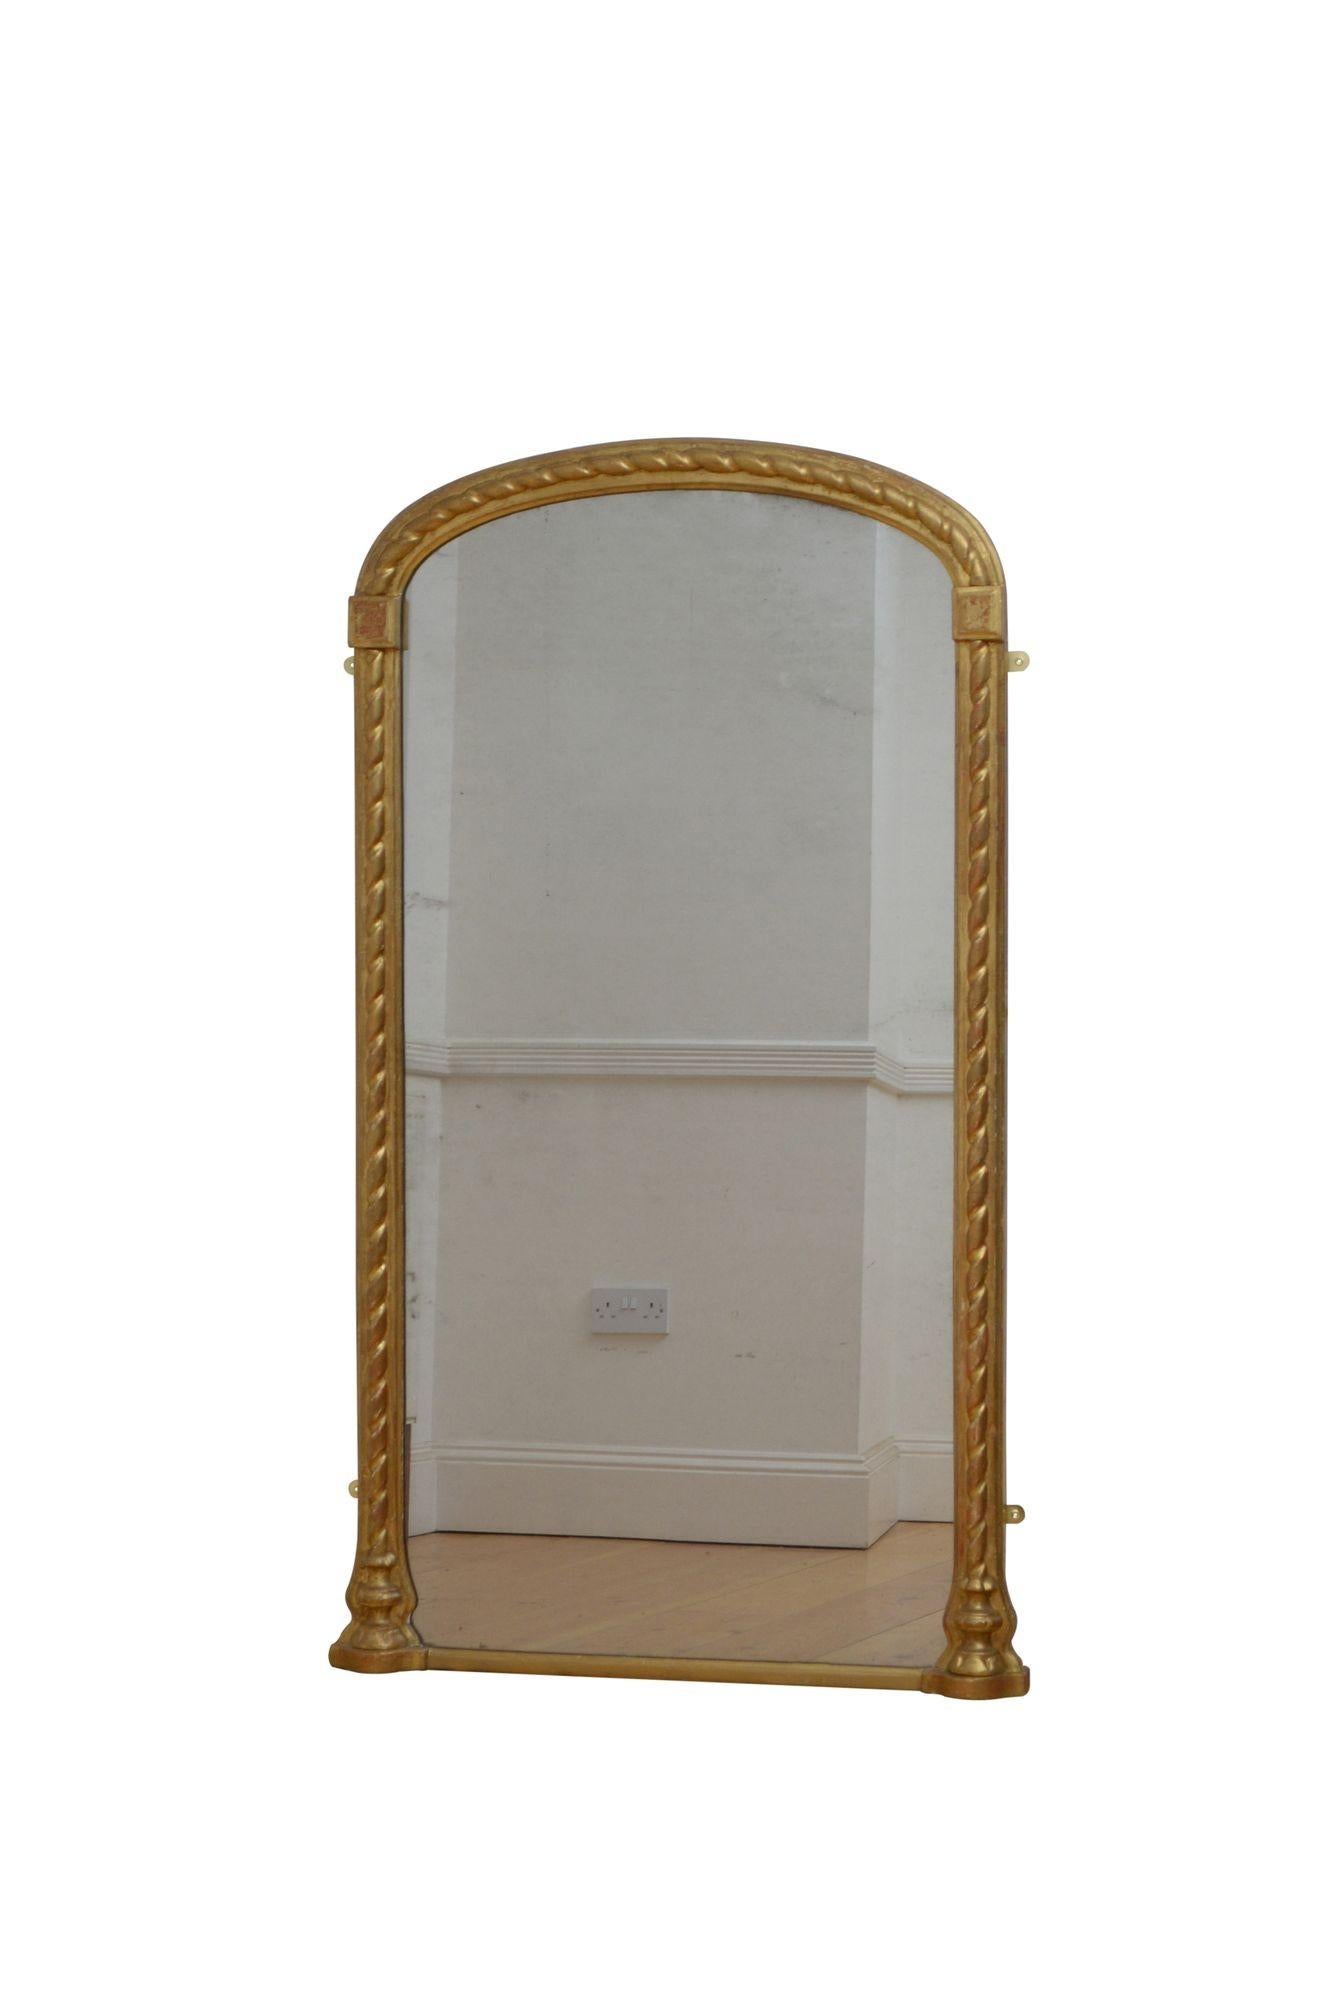 K0606  Eine gute 19. Jahrhundert vergoldeten Pier Spiegel oder Wandspiegel, mit Original-Glas mit einigen Stockflecken in gewölbten Rahmen mit geformten Rand und Seil geschnitzt Dekoration. Diese antike Konsole Tisch Spiegel behält seine